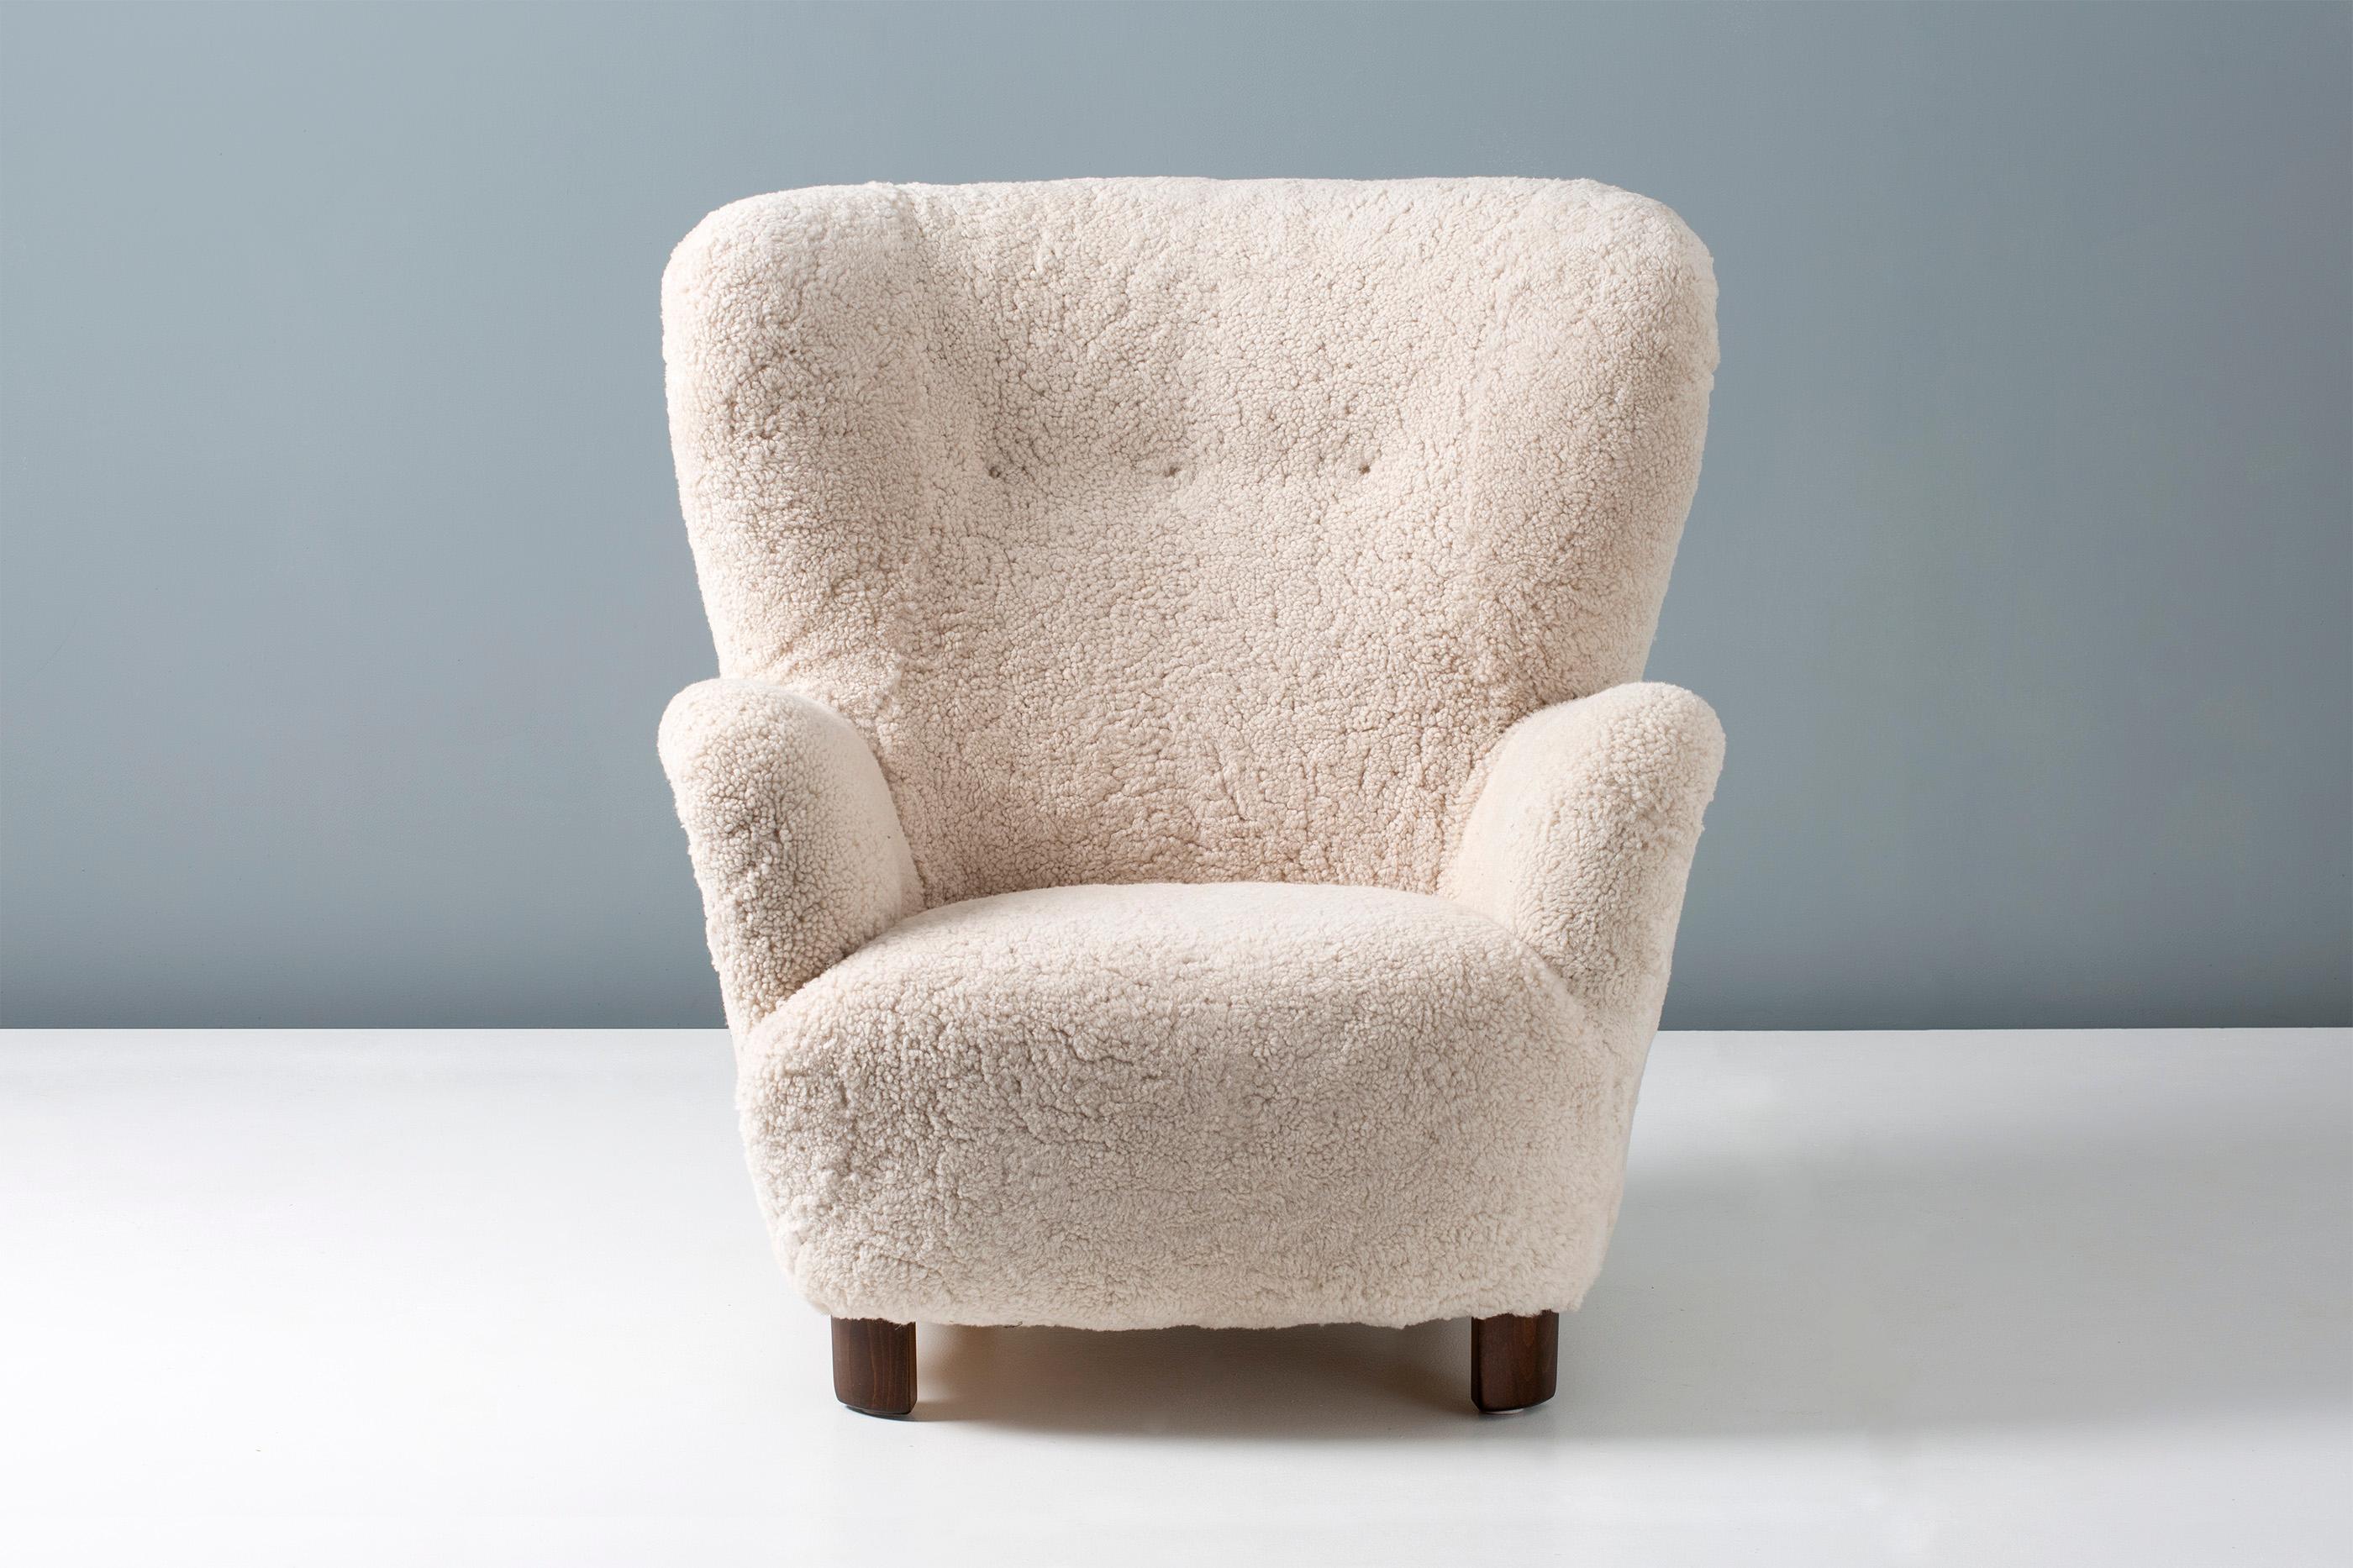 Hochlehniger Vintage-Sessel in der Art von Flemming Lassen, hergestellt in Dänemark zwischen 1940-1950. Die Beine sind aus gebeiztem Buchenholz, und der Stuhl wurde in unserer Londoner Werkstatt mit einer neuen Polsterung aus luxuriösem, farbigem